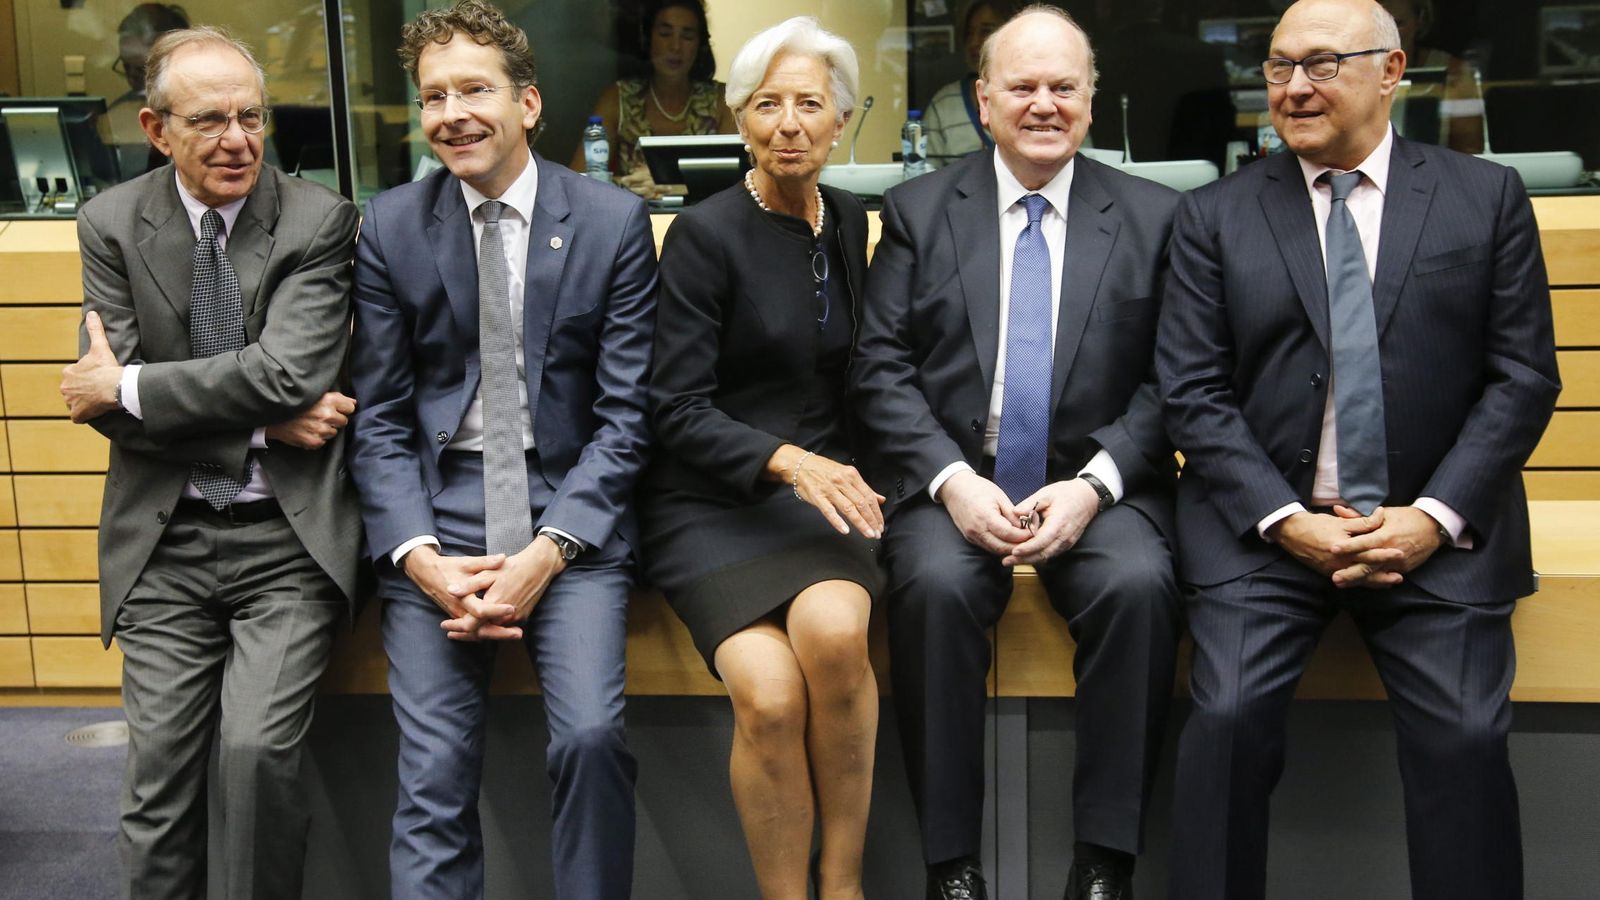 Foto: De izquierda a derecha, el ministro de Finanzas italiano, C. Padoan; su homólogo holandés, J. Dijsselbloem; la directora gerente del FMI, C. Lagarde; el ministro de Finanzas irlandés, M. Noonan; y su homólogo galo, M. Sapín. (EFE)